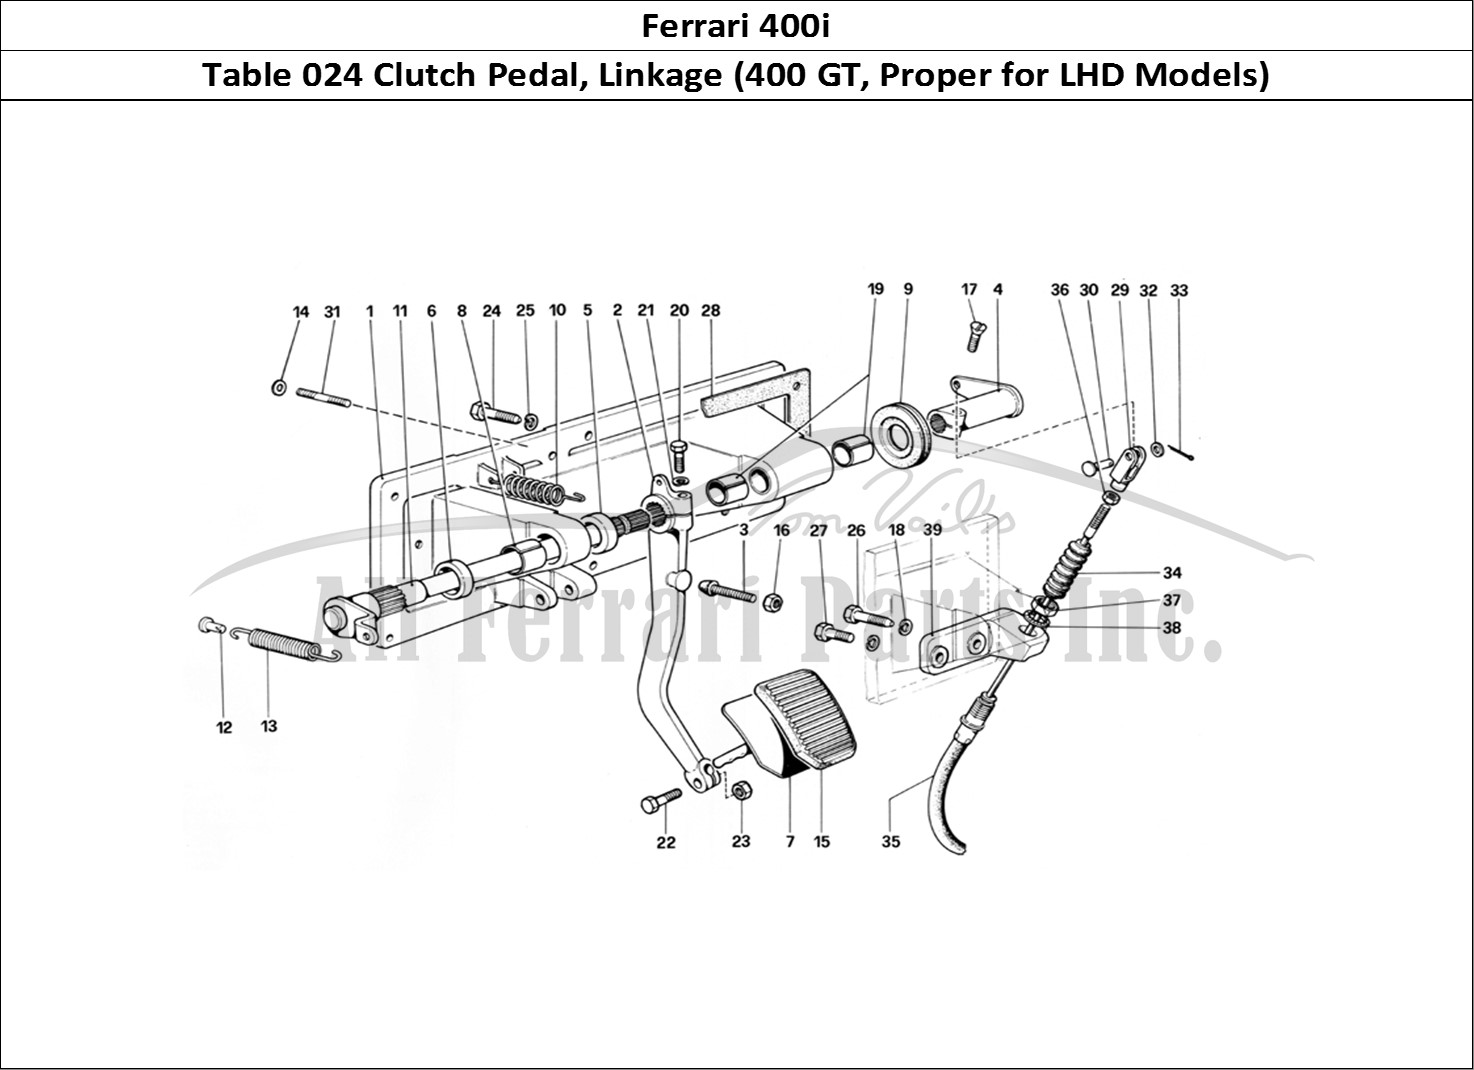 Ferrari Parts Ferrari 400i (1983 Mechanical) Page 024 Clutch Release Control (4